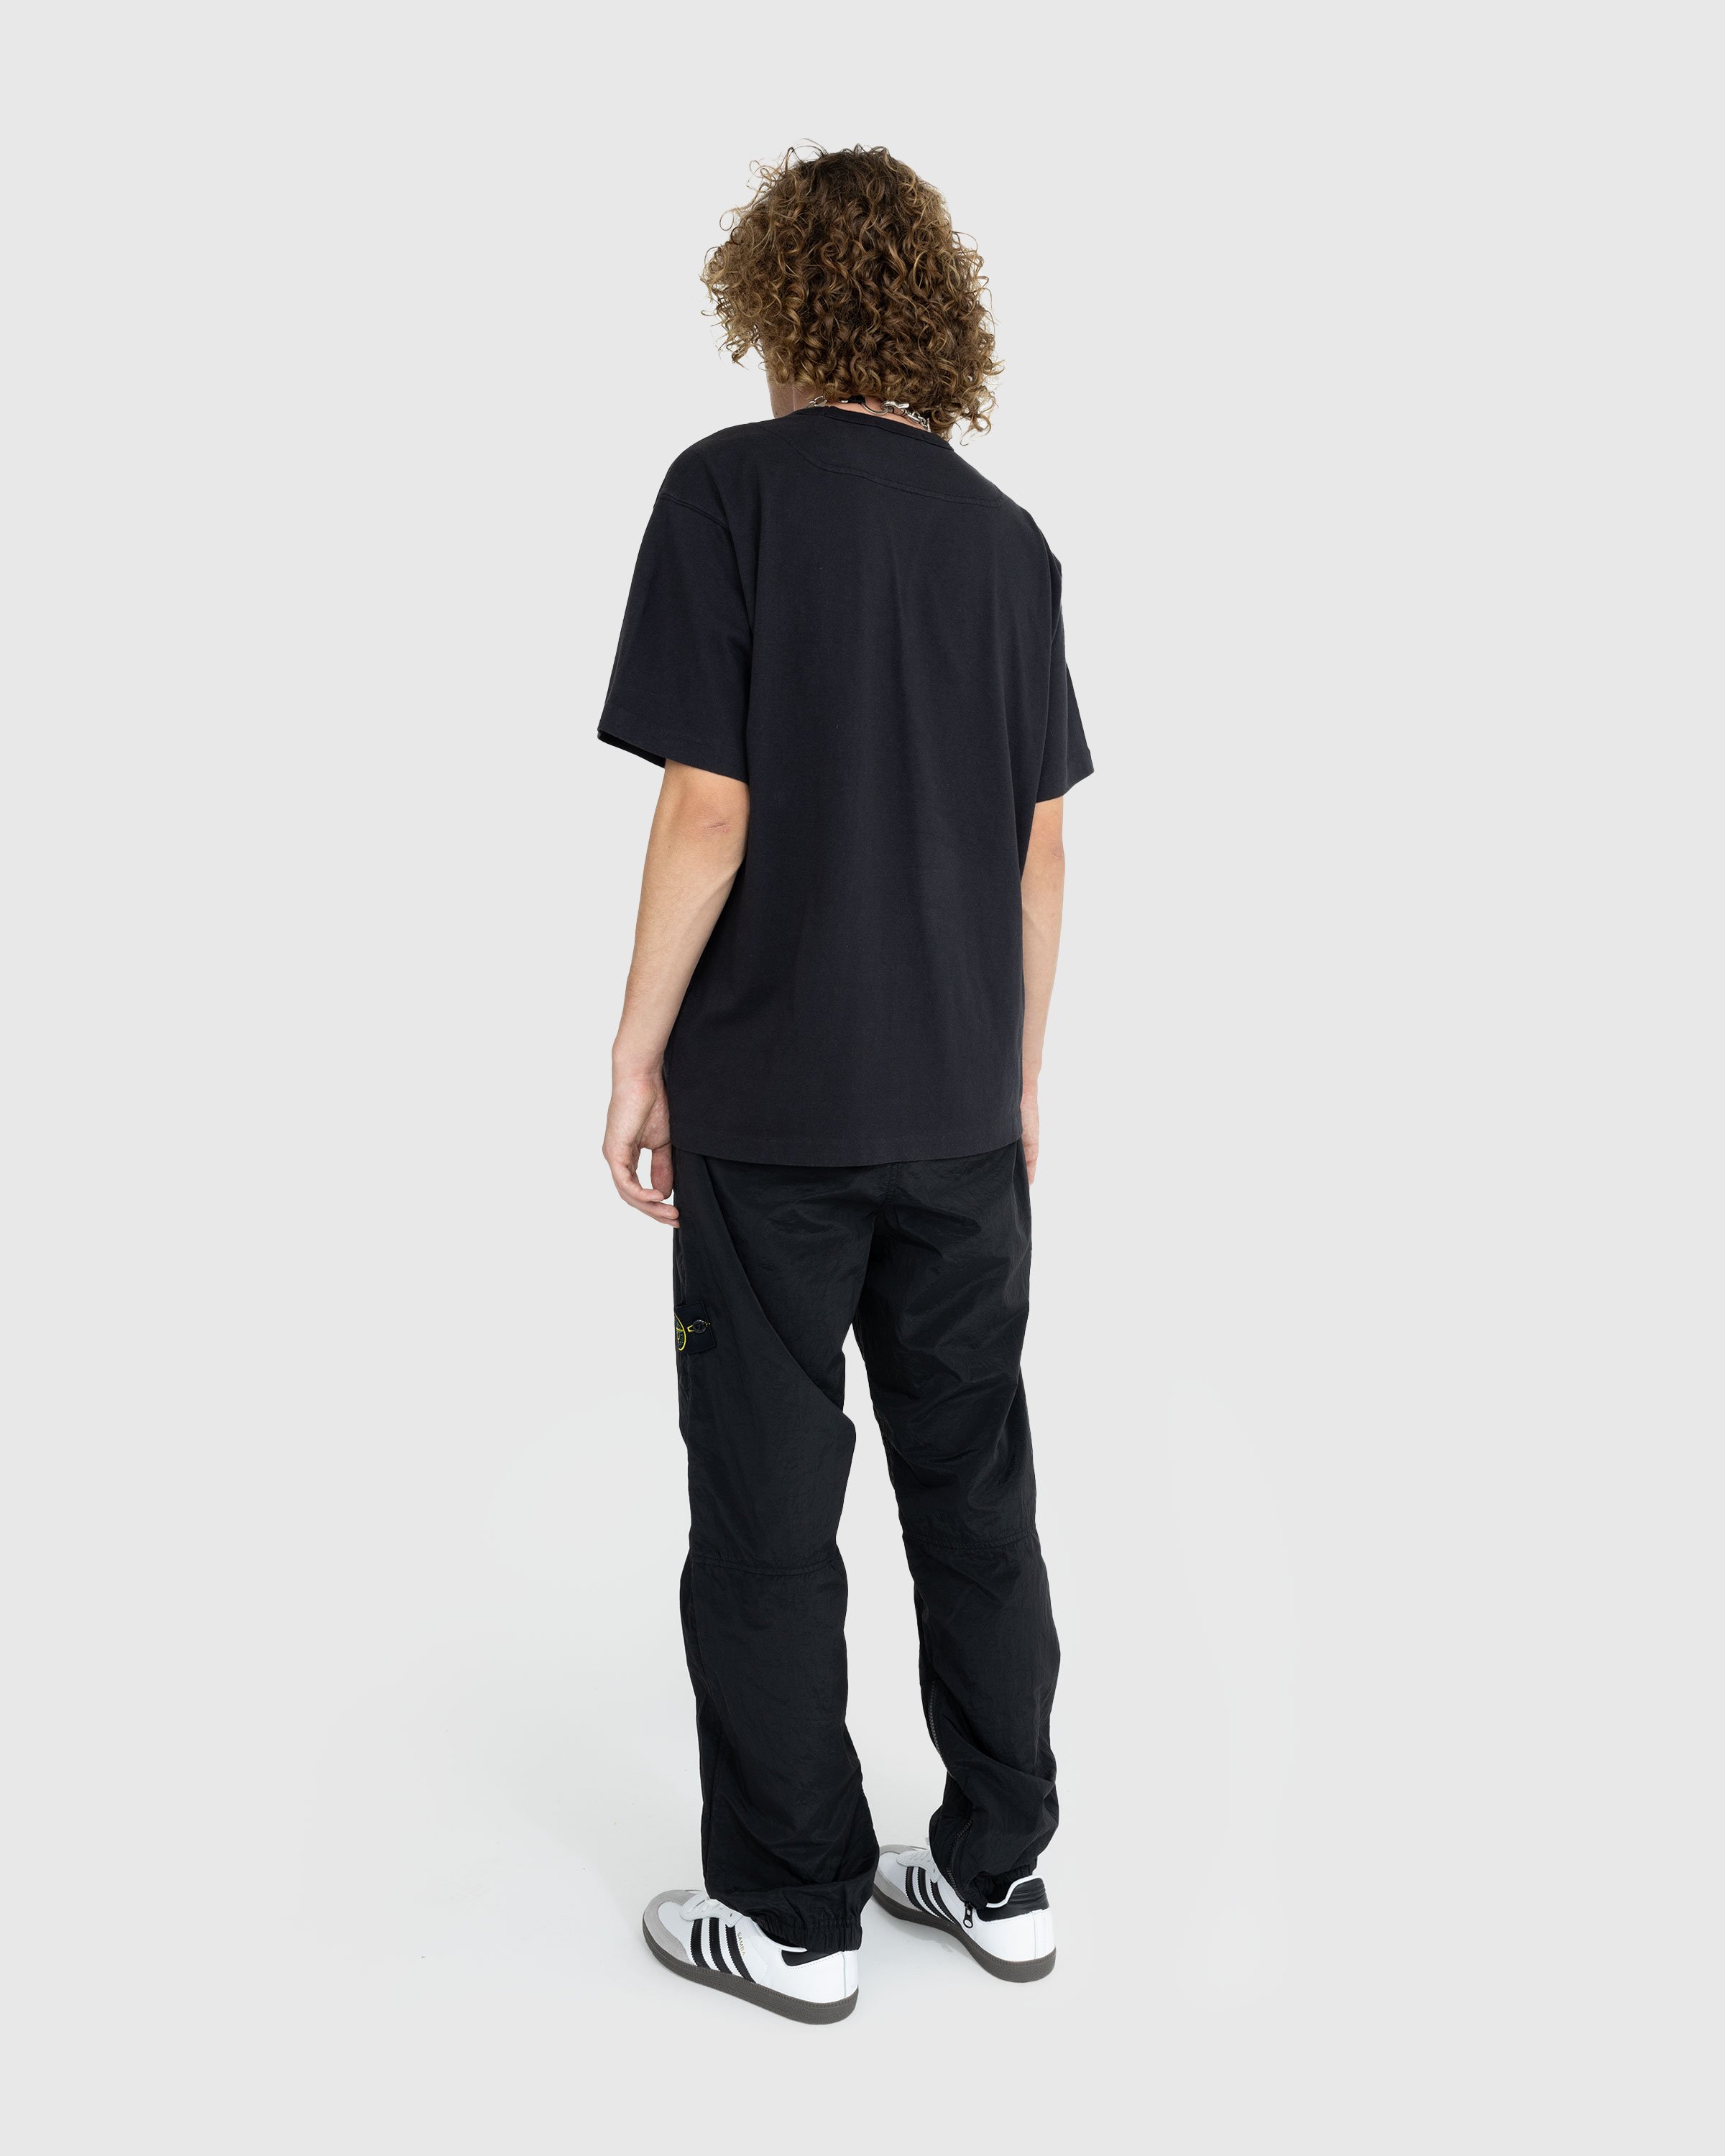 Stone Island - Garment-Dyed Logo T-Shirt Black - Clothing - Black - Image 4